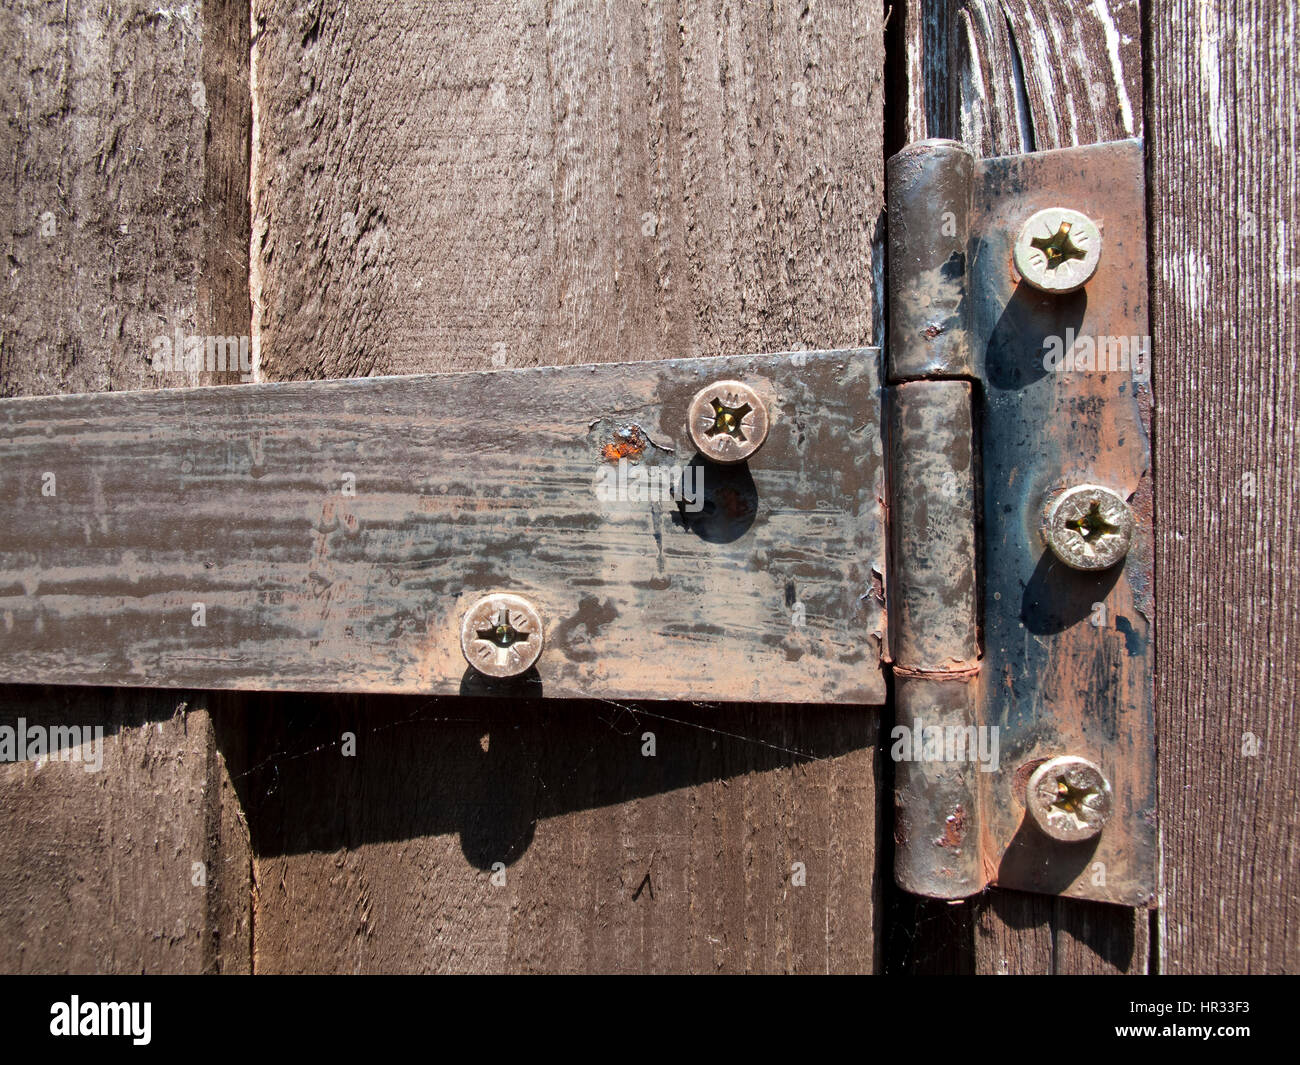 Rostige alte Eisen Scharnier auf Holz Gartenhaus Tür Stockfotografie - Alamy